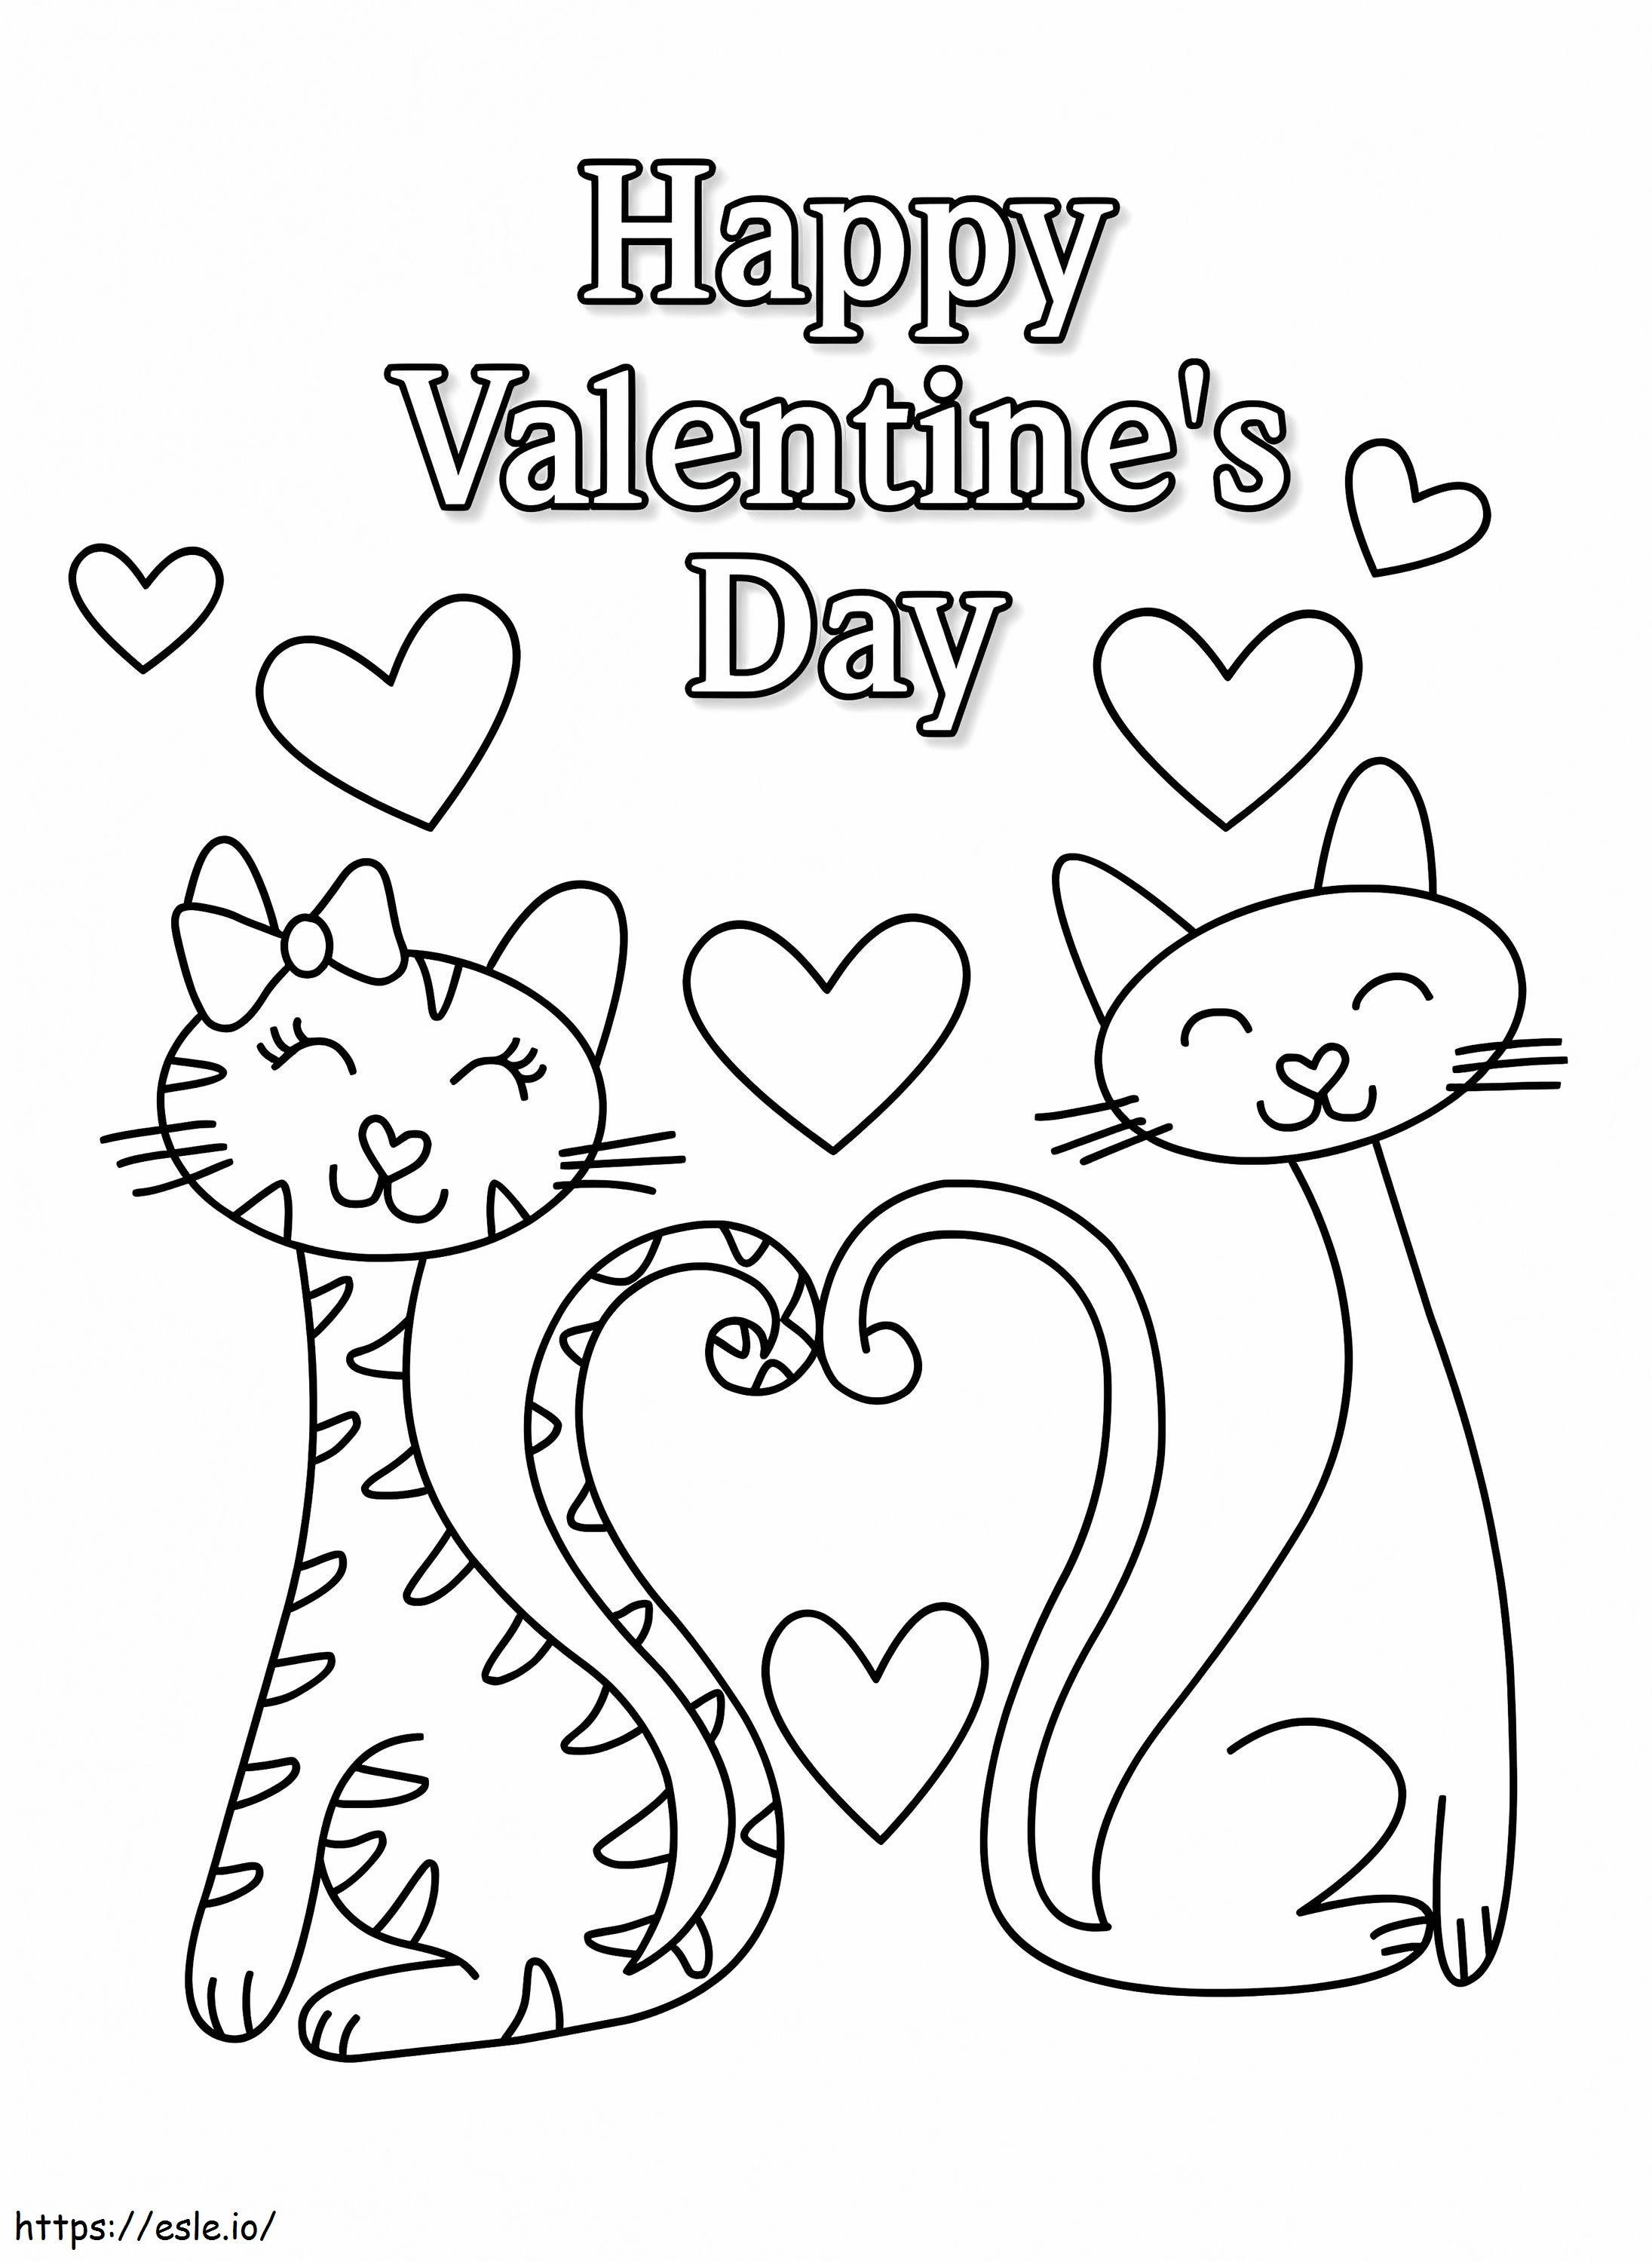 Happy Valentines Day Coloring Sheet Tartaruga Diario Pagina Immagini Di 1 748X1024 da colorare